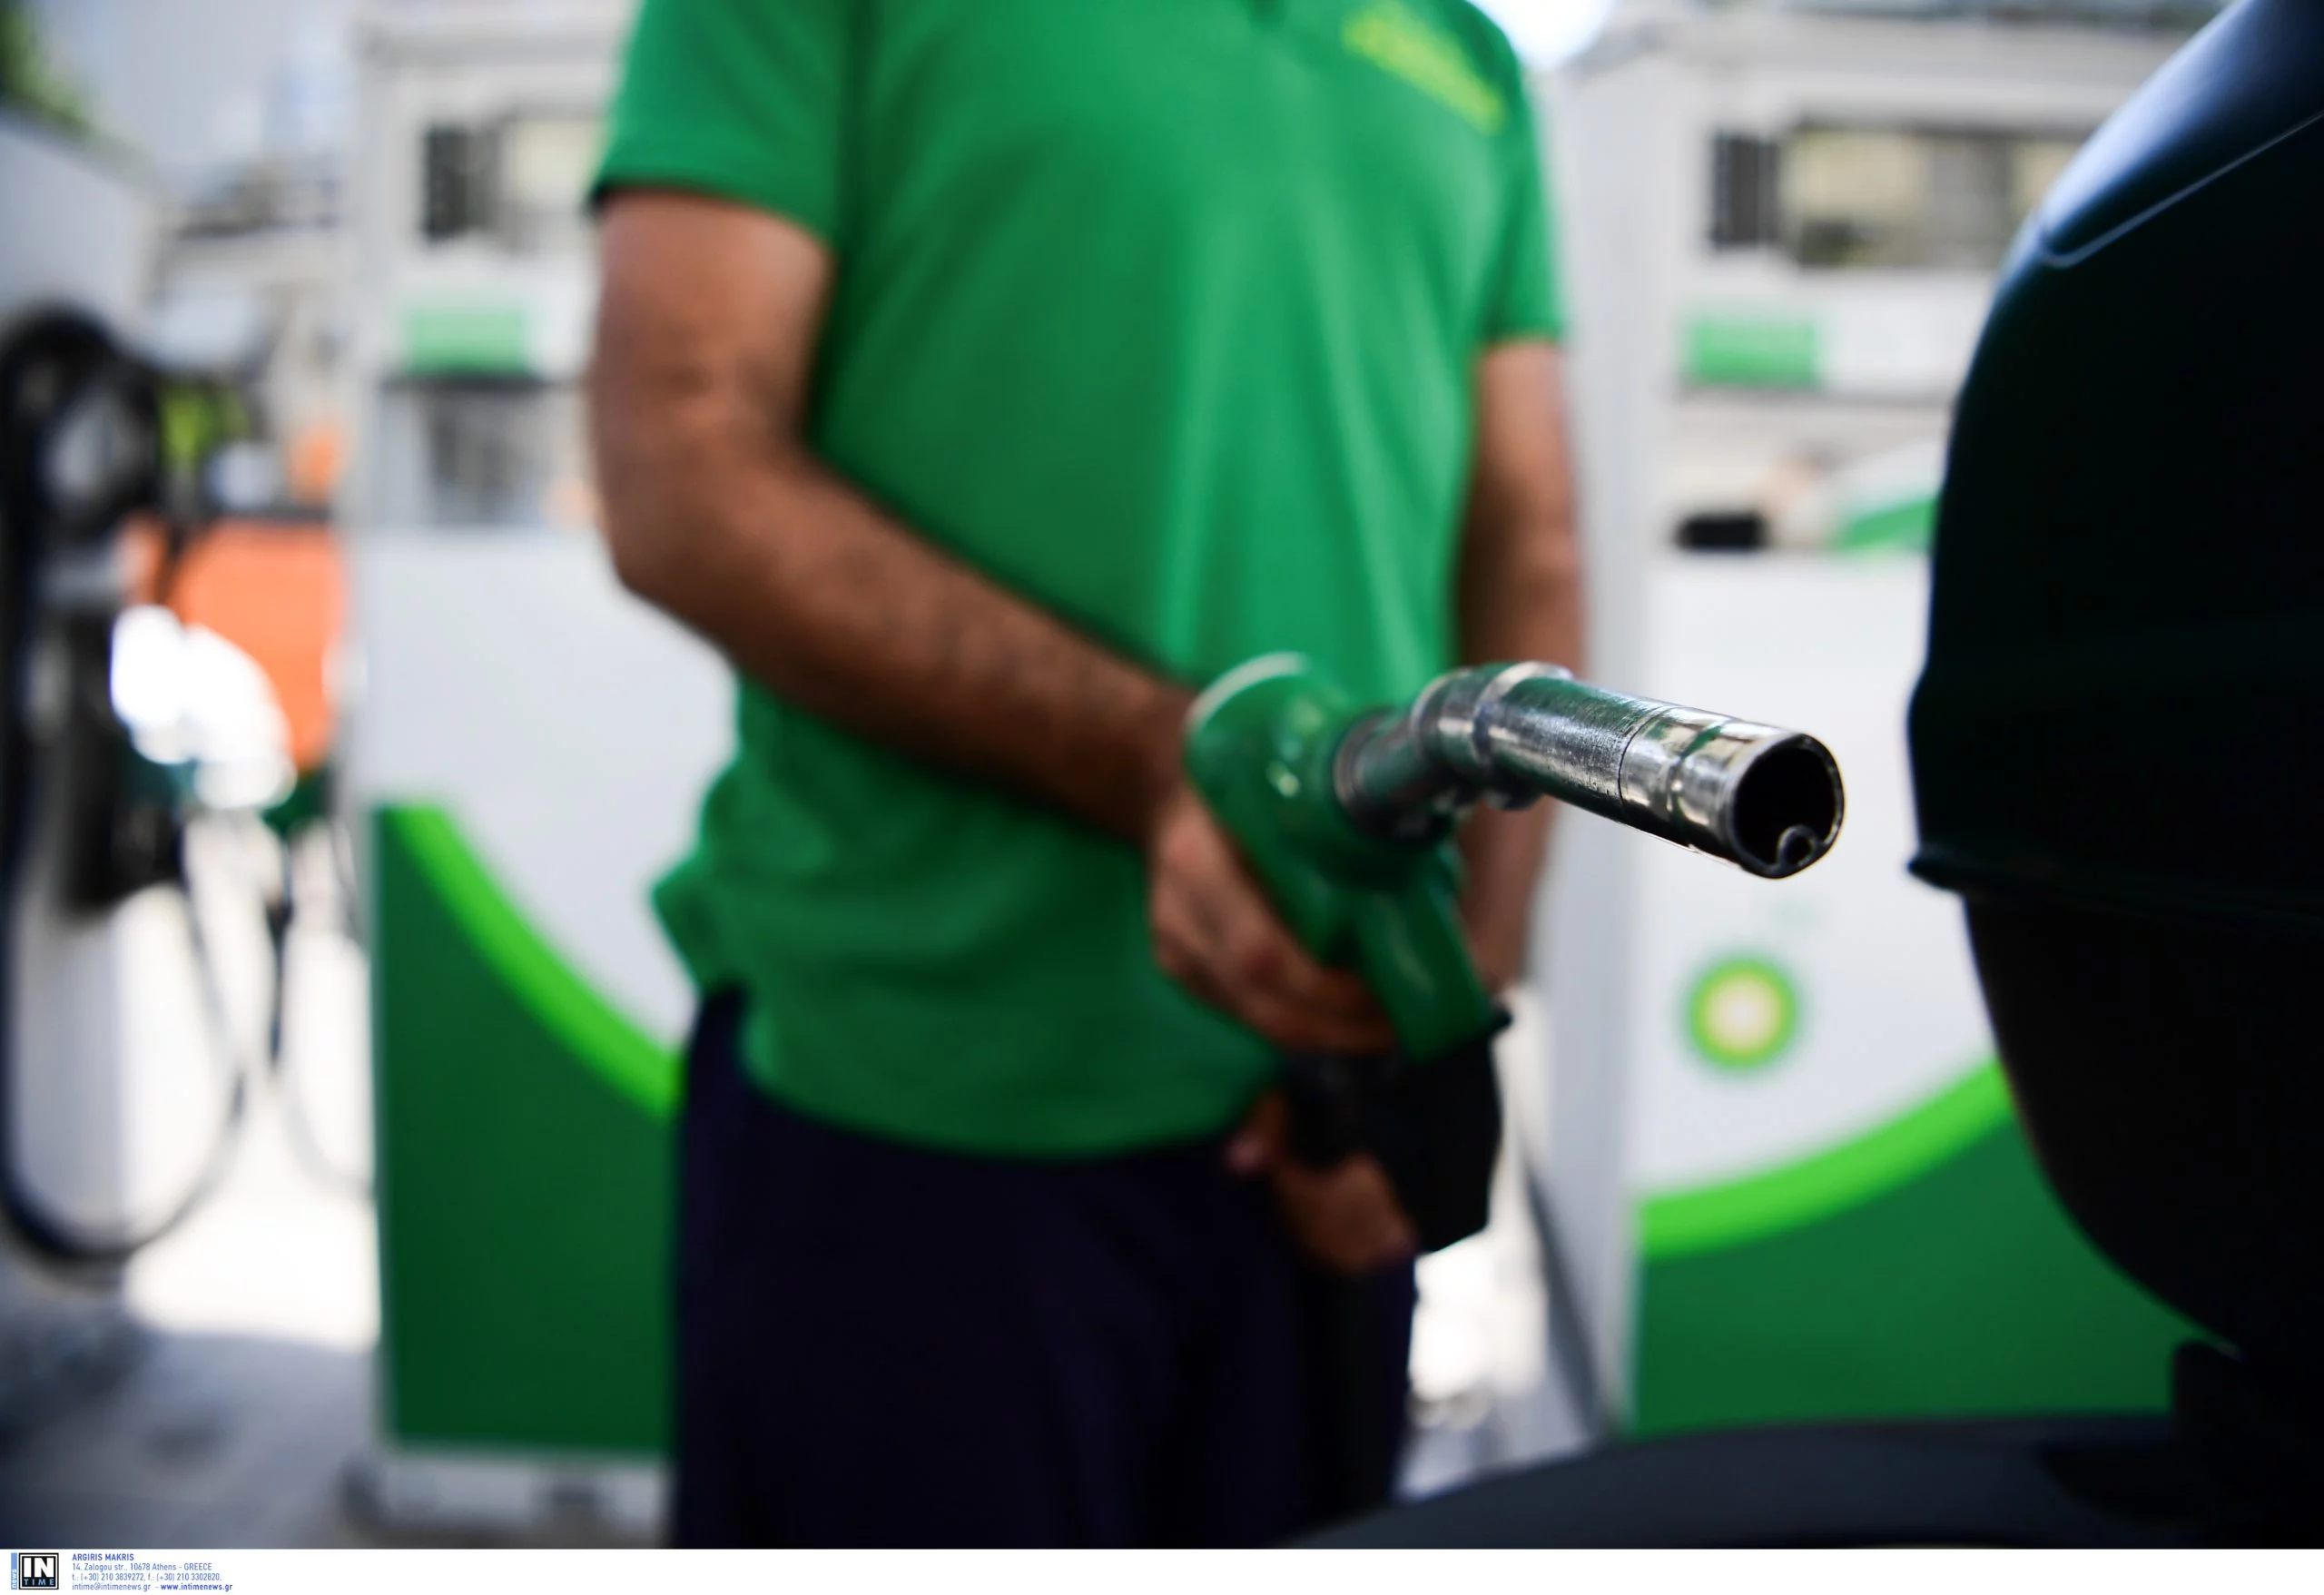 Πρόεδρος Βενζινοπωλών: Πέρασε στις αντλίες η πτώση του πετρελαίου - Πού μπορεί να φτάσει η τιμή της βενζίνης